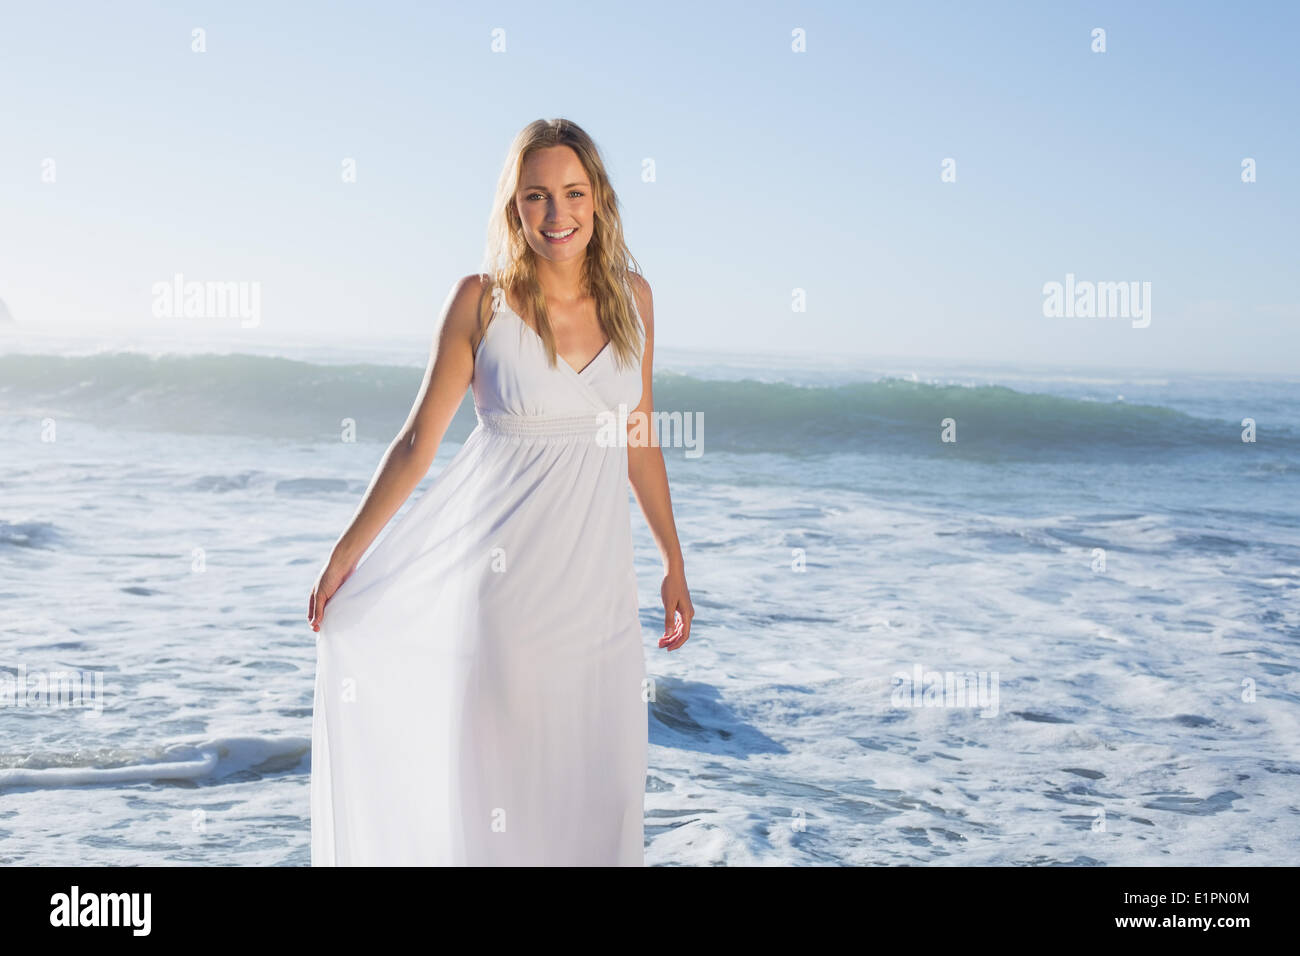 Belle blonde à la plage en robe blanche Banque D'Images